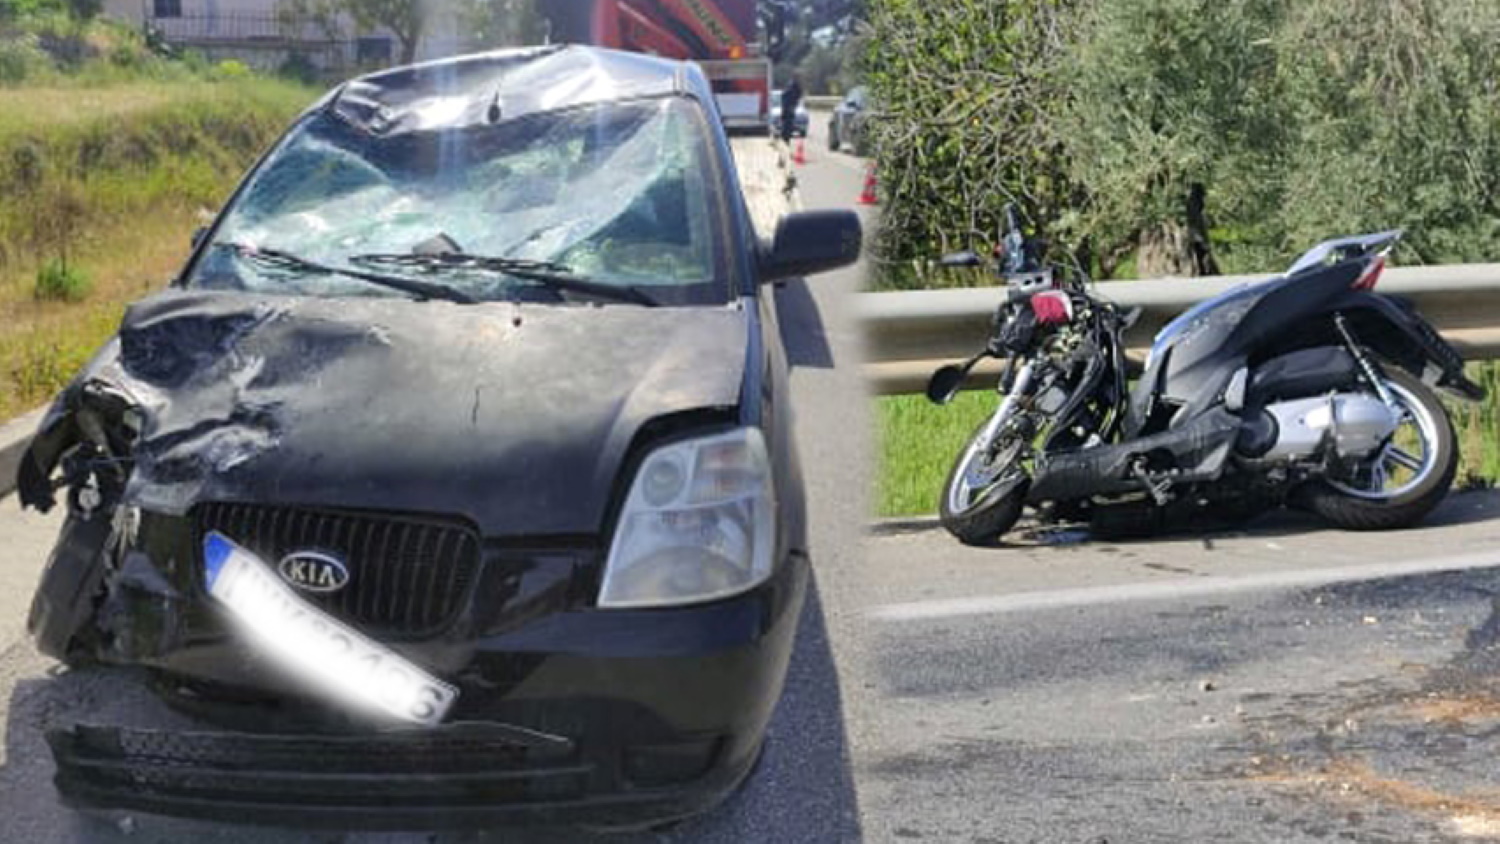 Λέσβος: Θανατηφόρο τροχαίο κοντά στο Πυργί – Νεκρός ο οδηγός της μηχανής, δύο σοβαρά τραυματίες